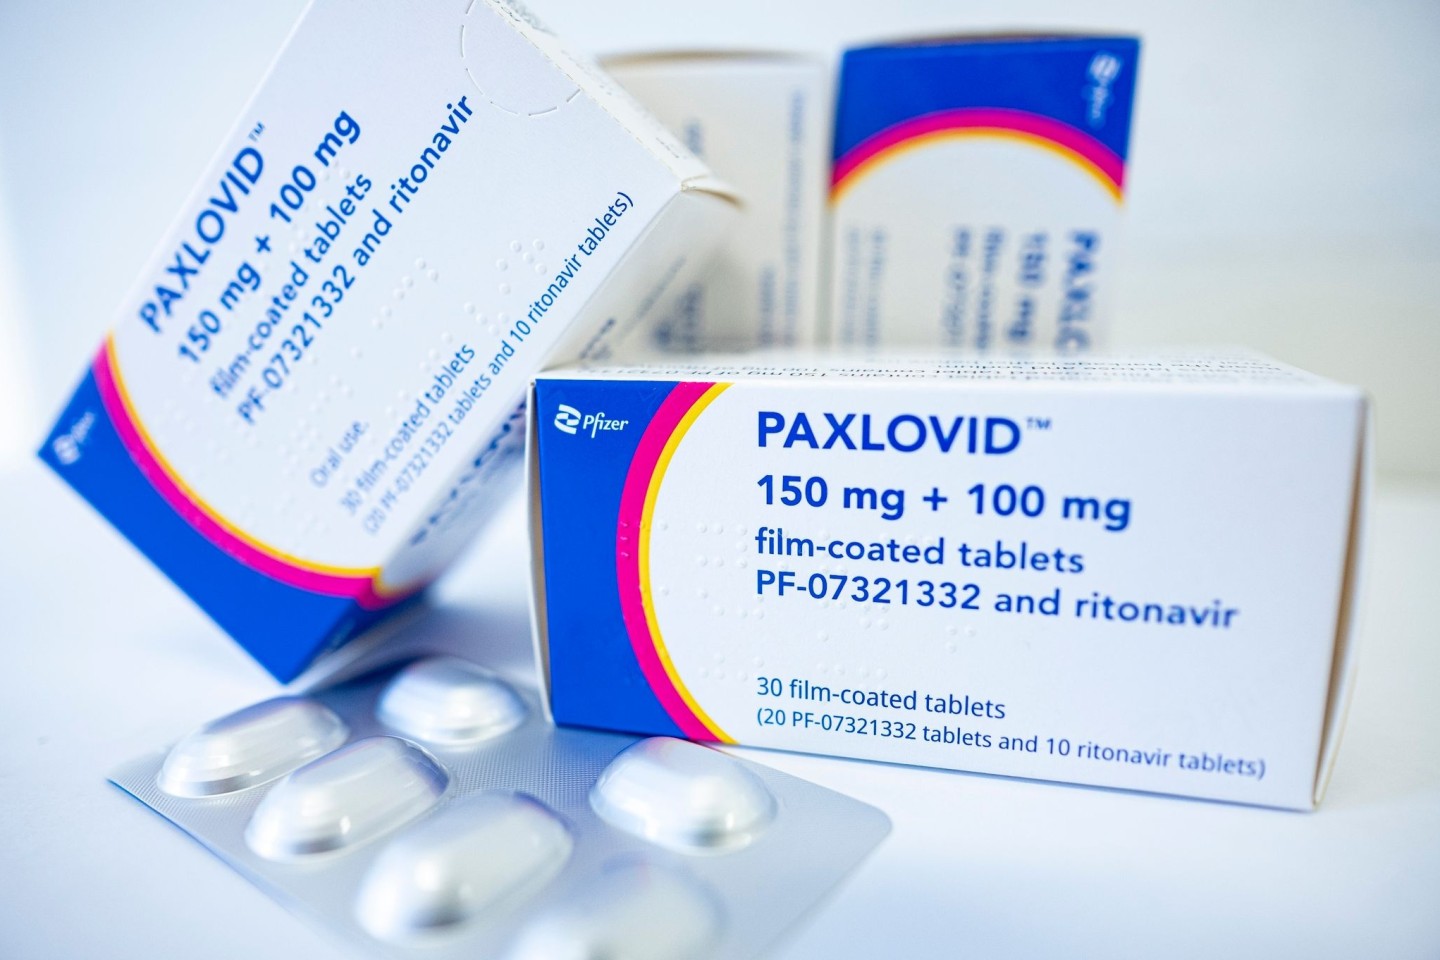 Mehrere Apotheken werden verdächtigt, das Corona-Medikament Paxlovid illegal weiterverkauft zu haben.